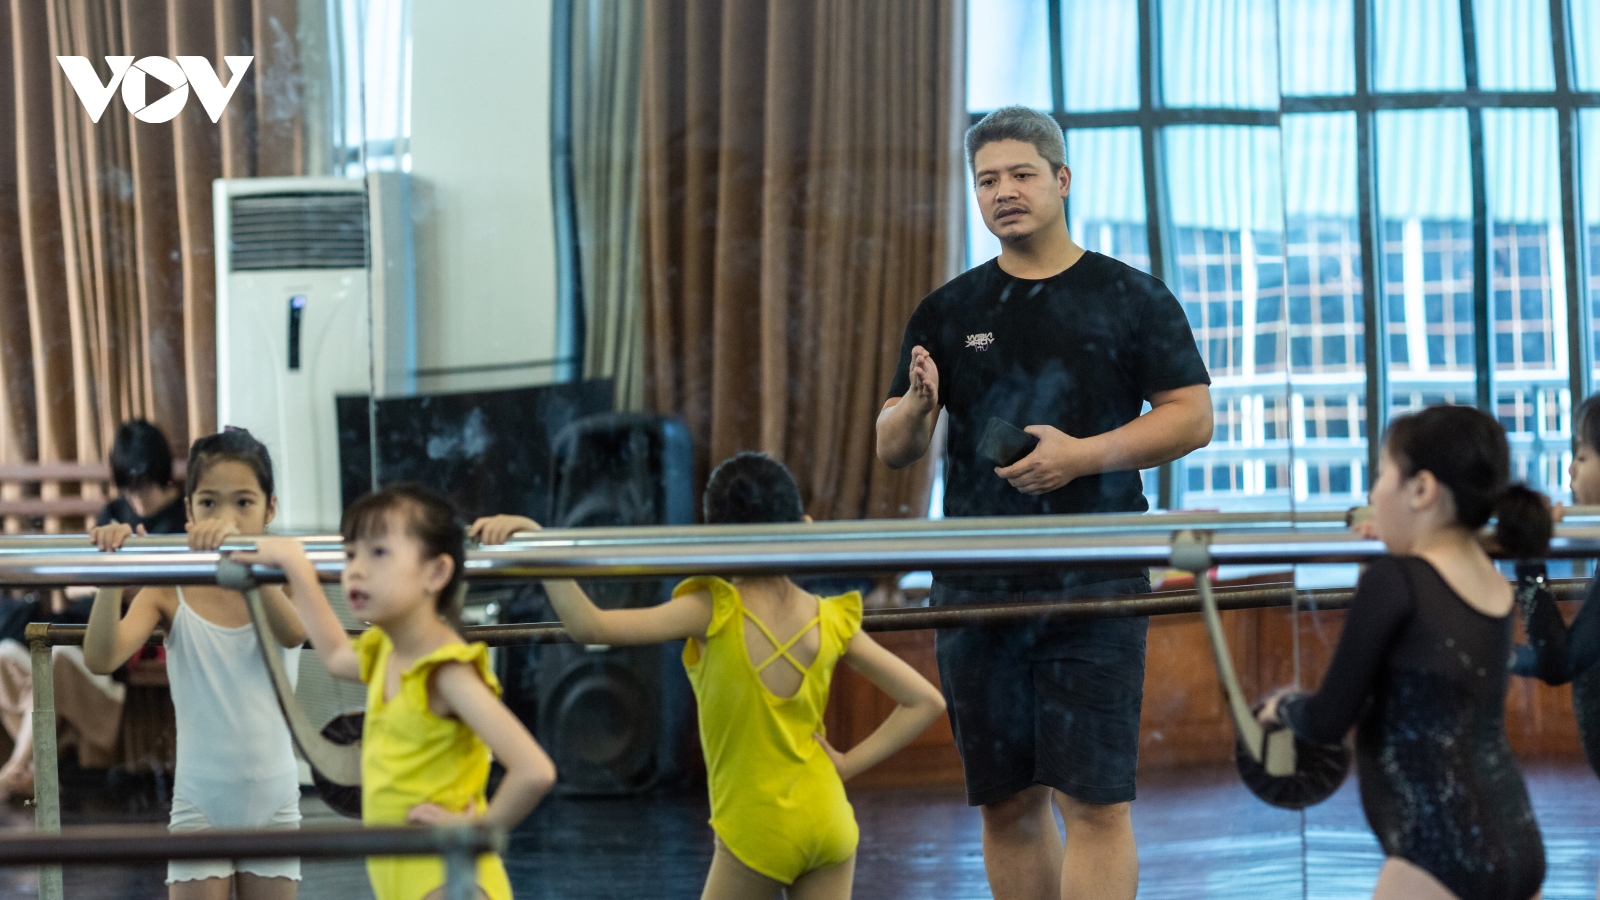 "Hoàng tử ballet" Đàm Hàn Giang - Người truyền lửa cho lớp trẻ yêu nghệ thuật múa